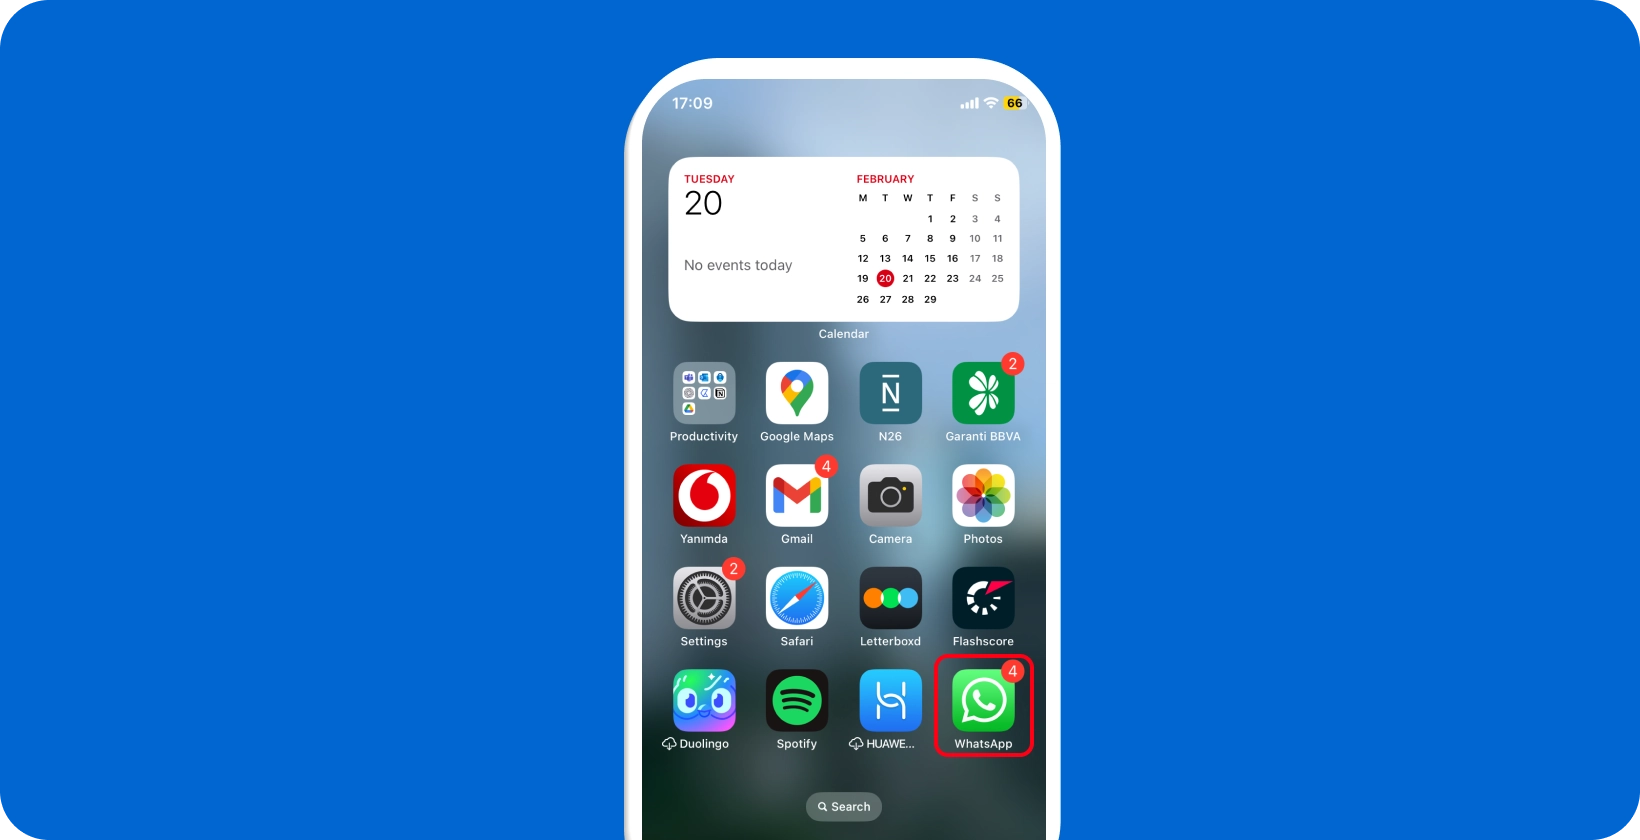 स्मार्टफ़ोन स्क्रीन सूचनाओं के साथ WhatsApp आइकन प्रदर्शित करती है, जो वॉयस डिक्टेशन के लिए ऐप की तत्परता को उजागर करती है।